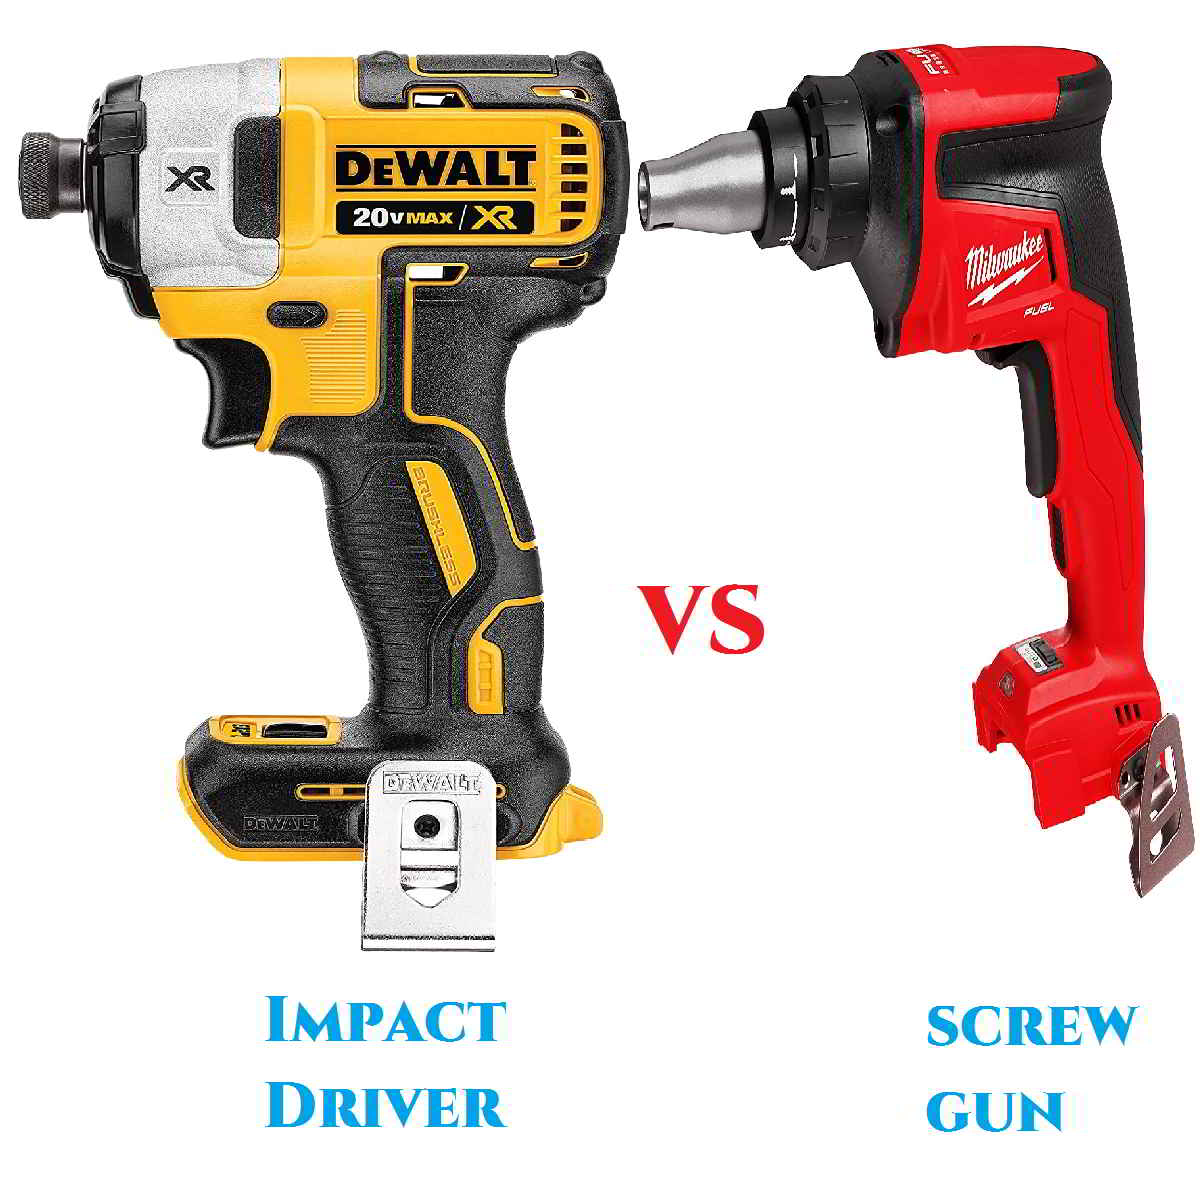 Screw gun vs impact driver